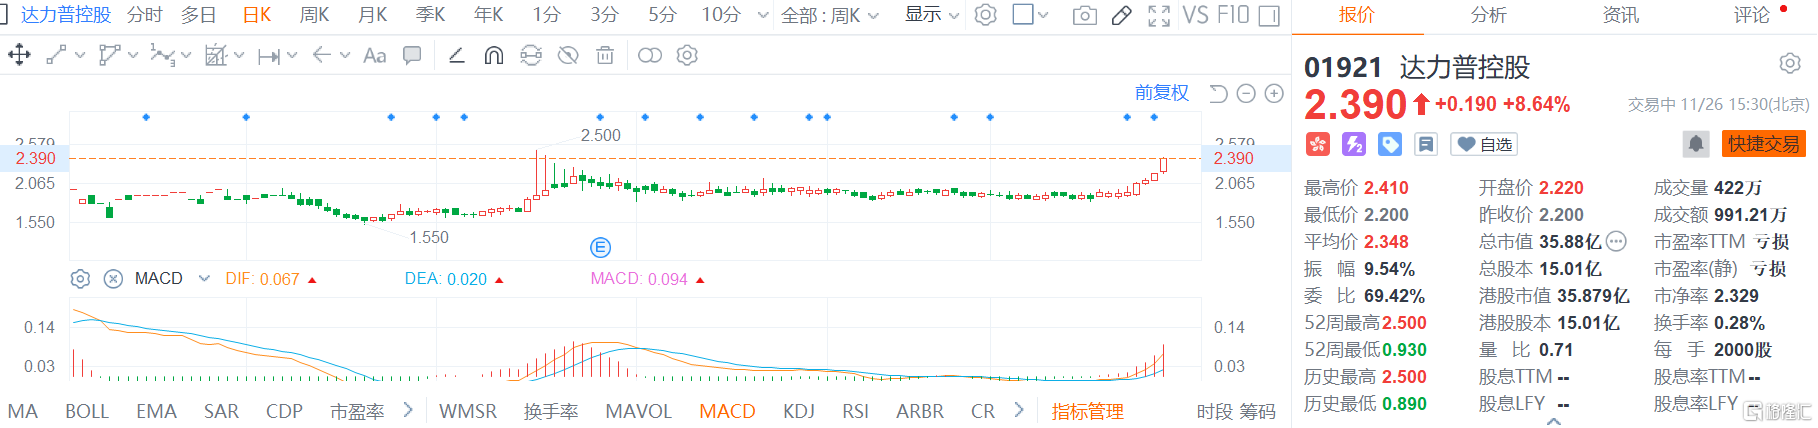 摩臣5平台达力普控股(1921.HK)续涨8.6% 原材料价格下降